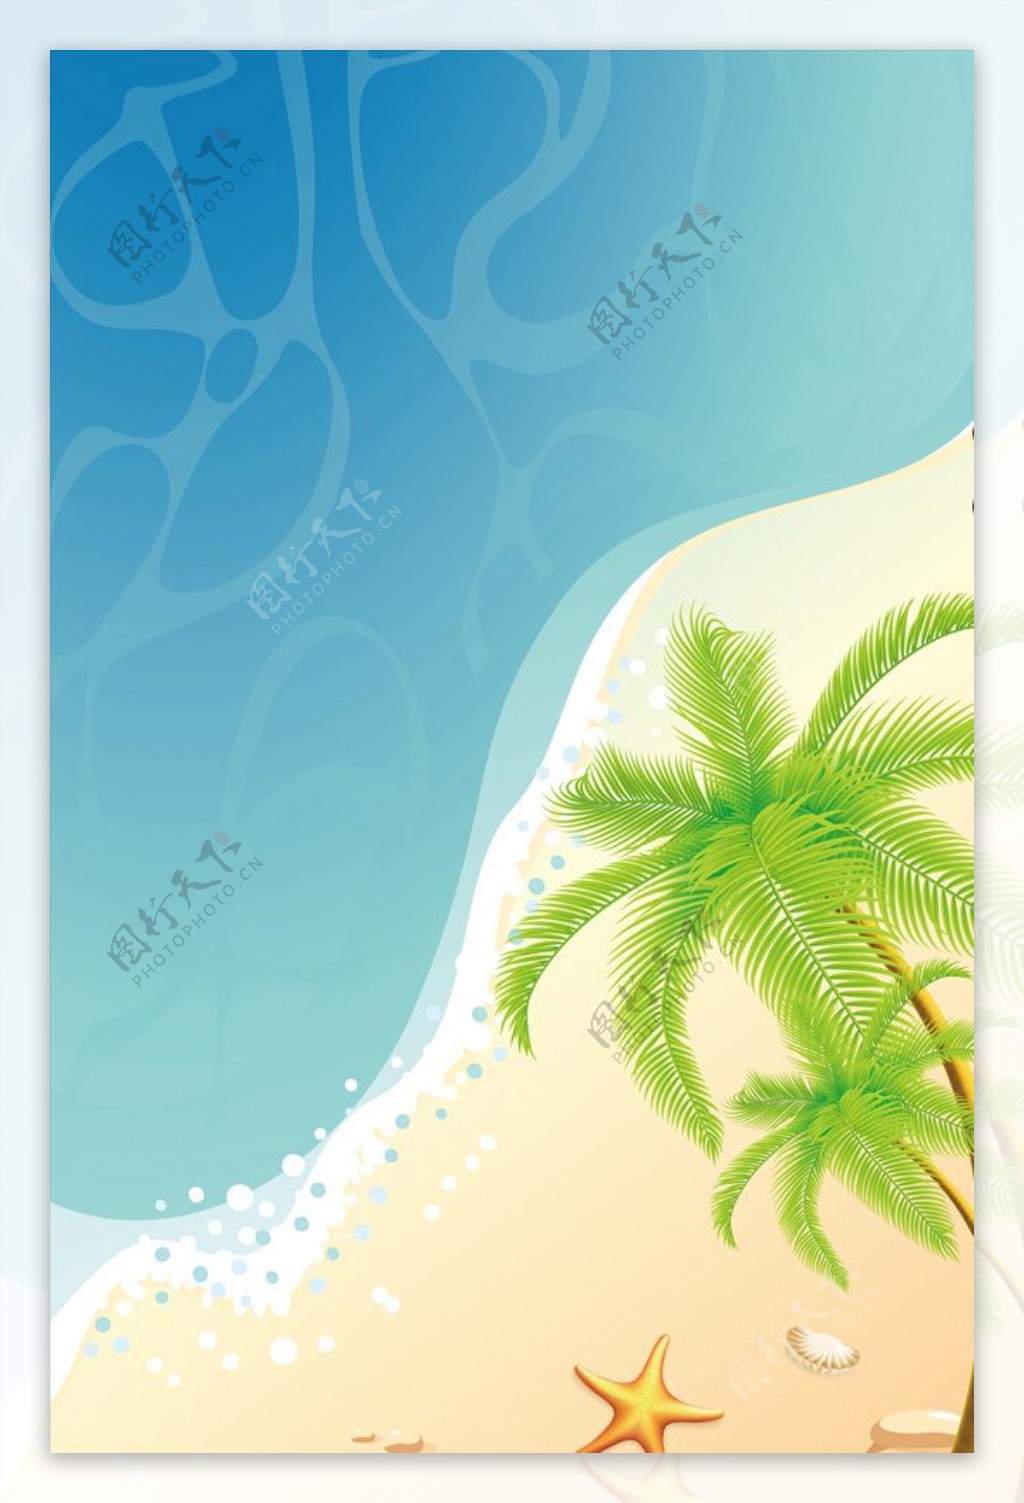 阳光沙滩海边椰子树碧波